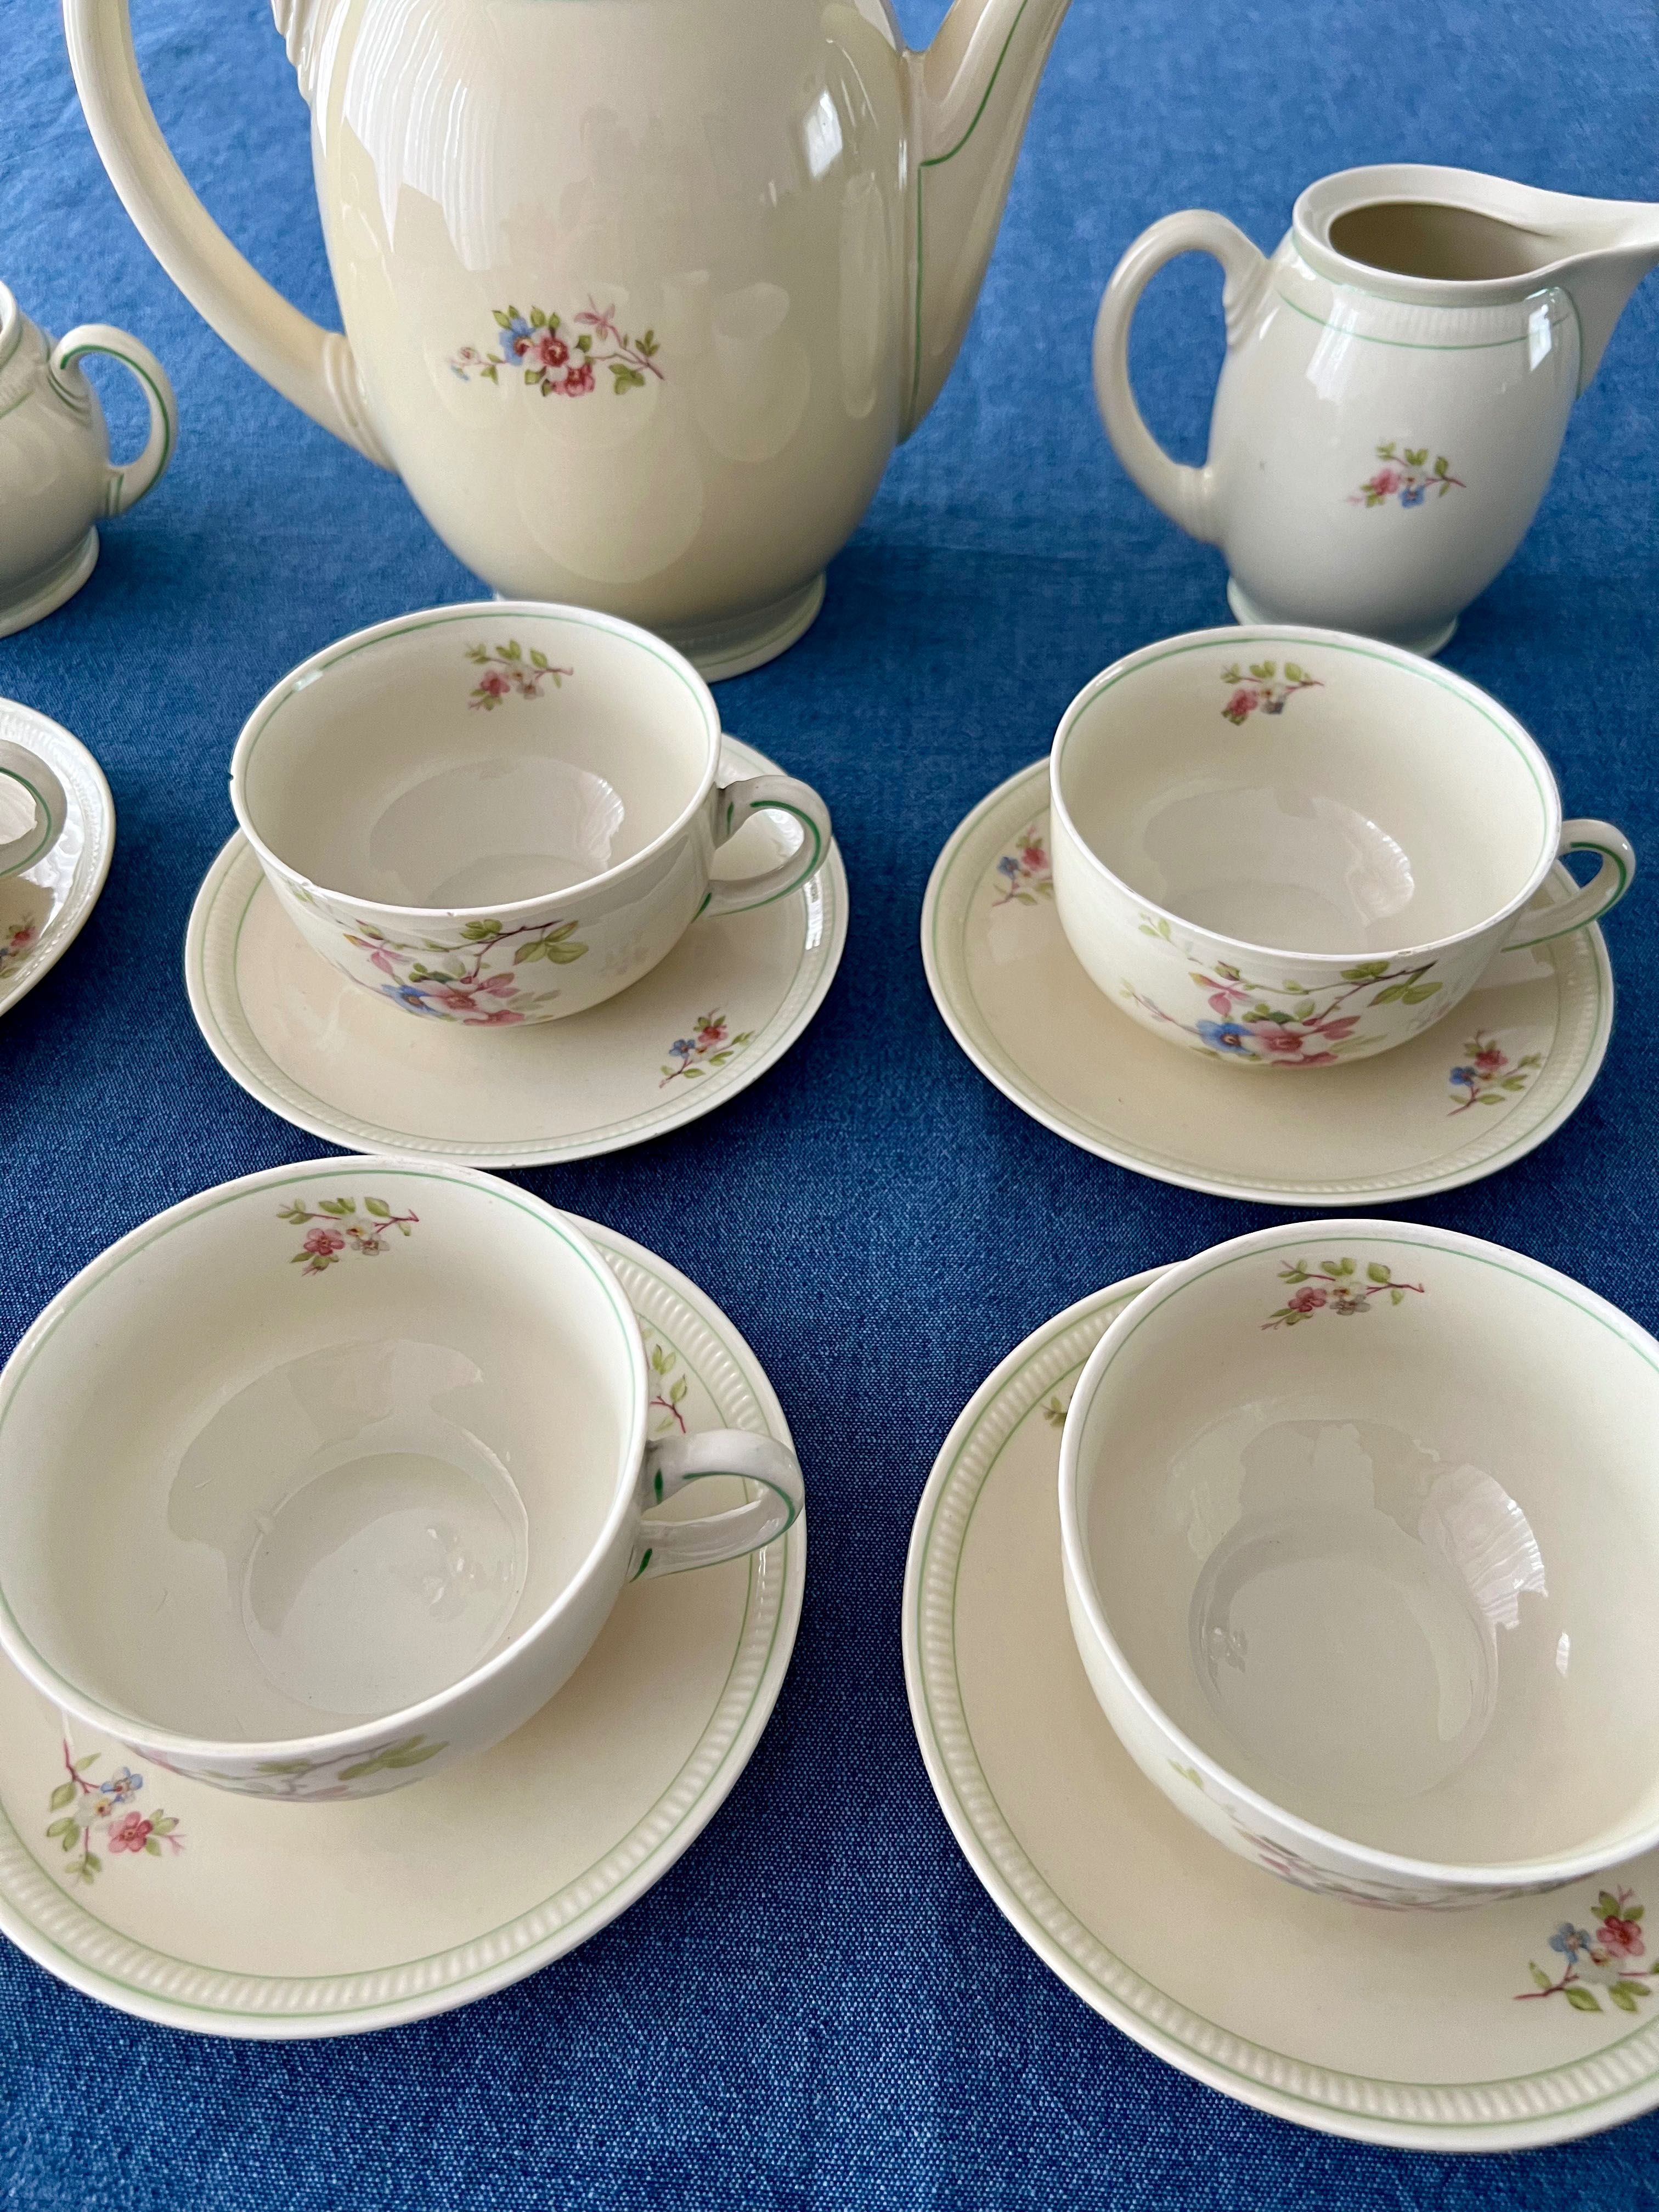 Serwis do kawy herbaty kompletny Brunhilde Elfenbein porcelana Bavaria